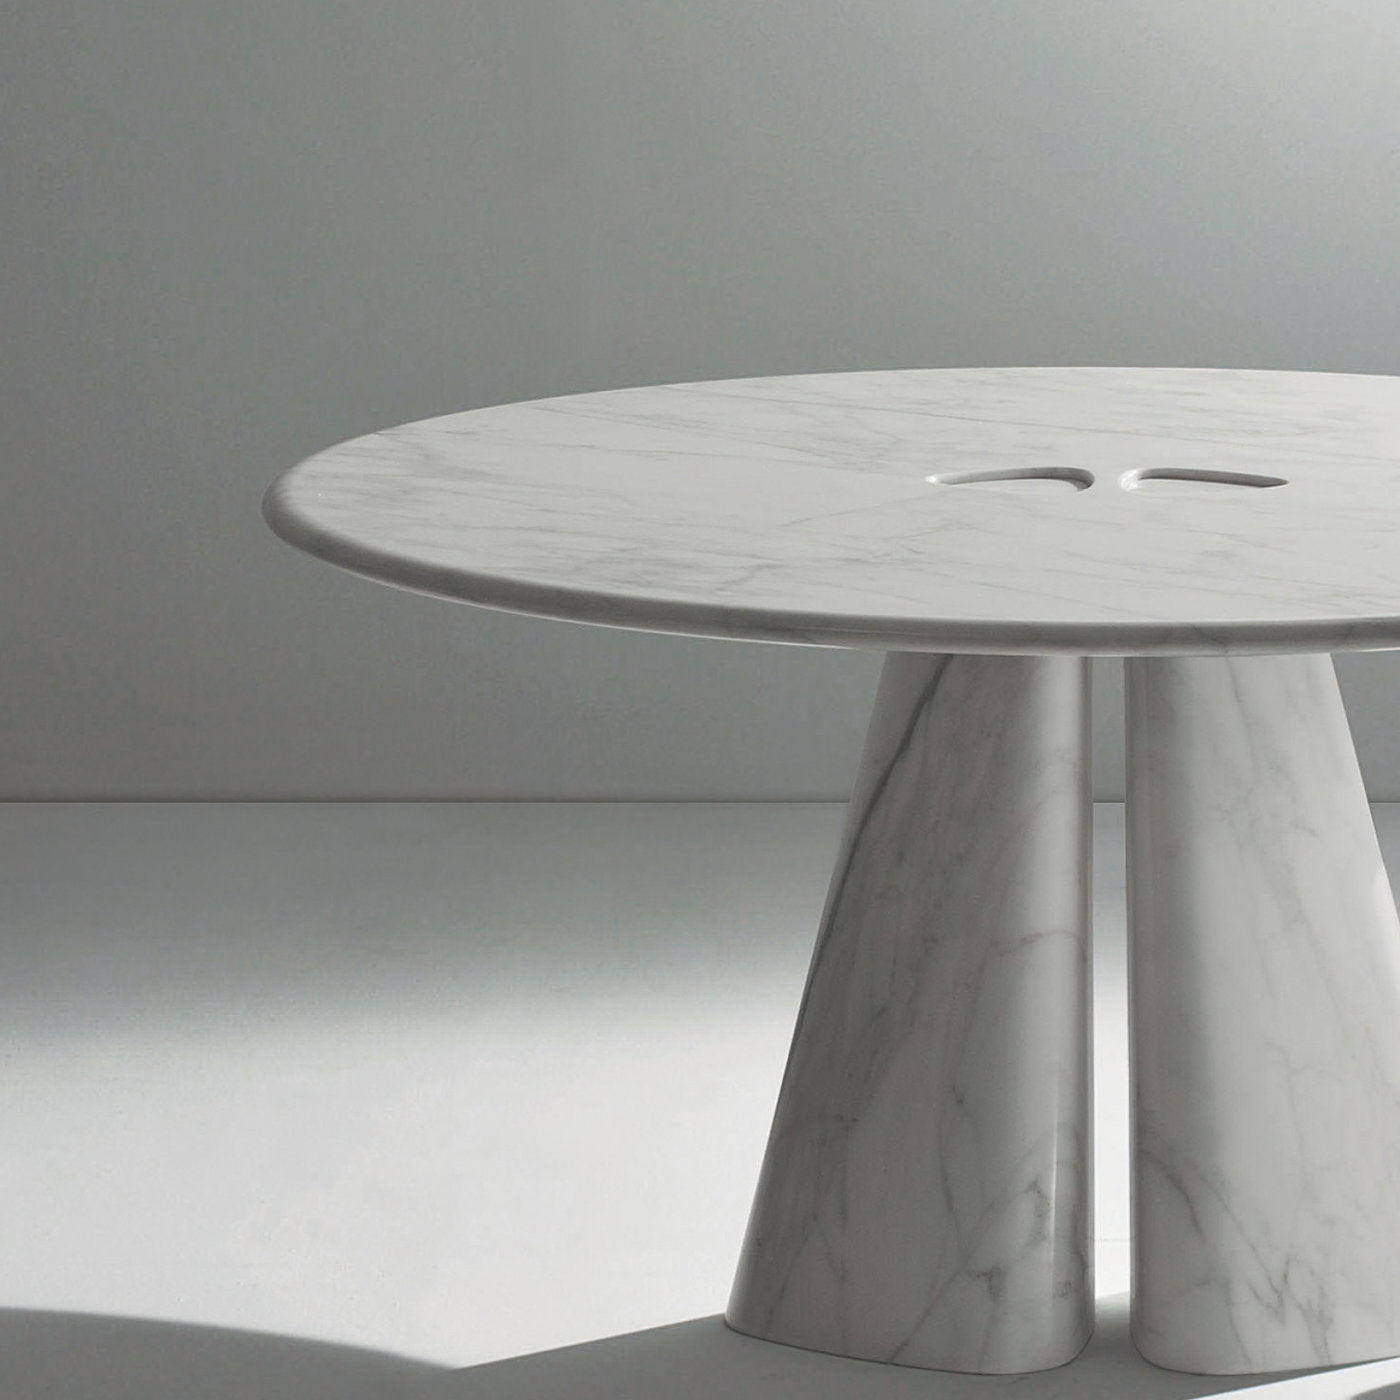 Raja Runder Tisch von Bartoli Design - Alternative Ansicht 4